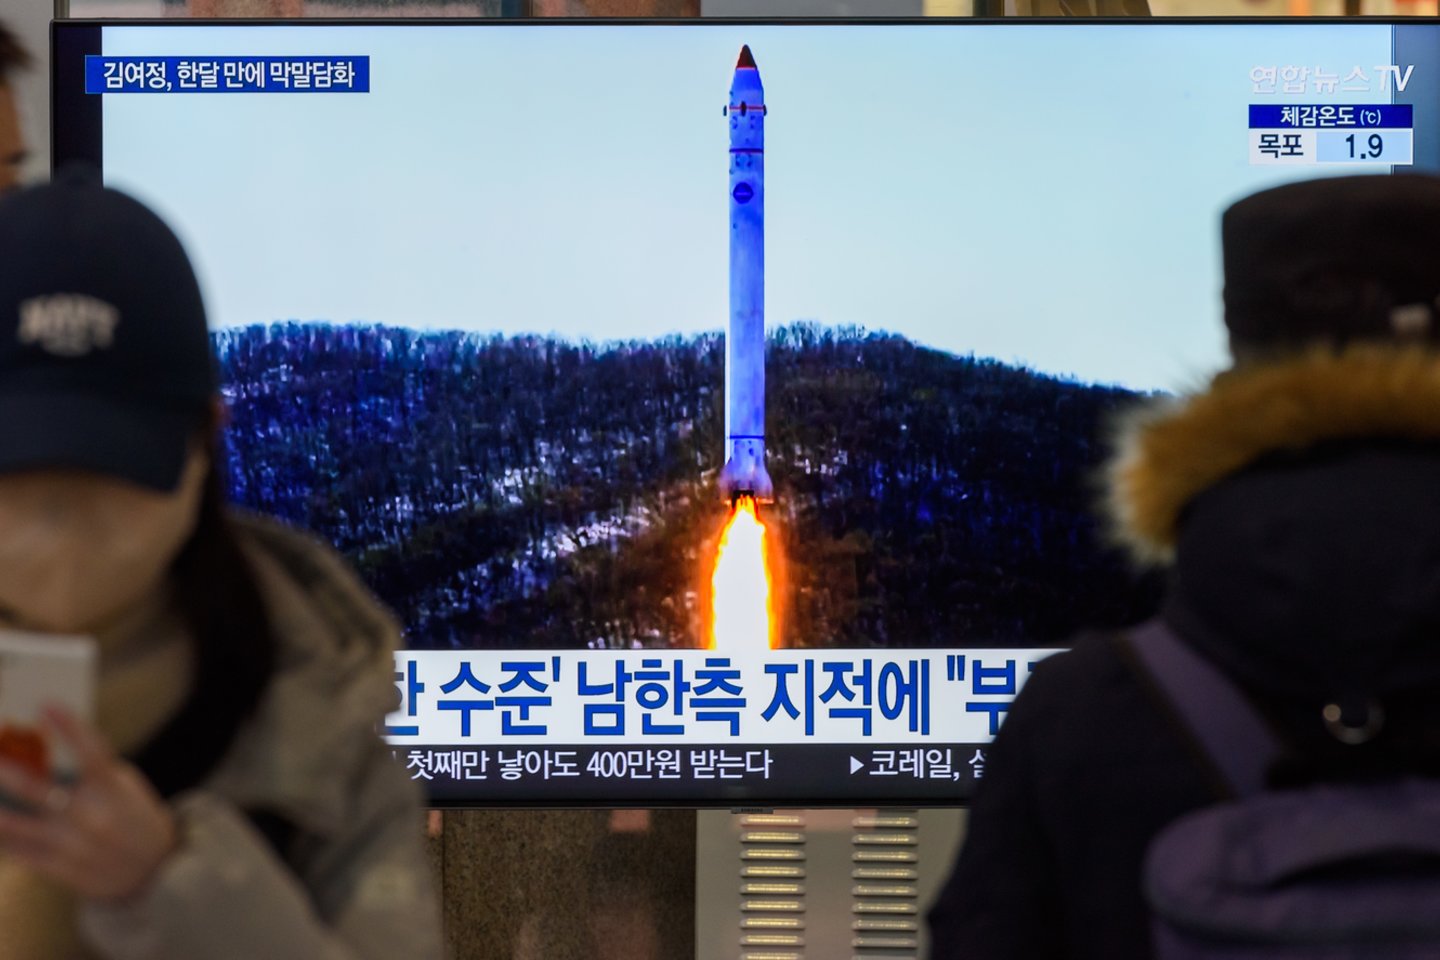 Penktadienį Šiaurės Korėja paleido „neatpažintą balistinę raketą“, pranešė Seulo kariuomenė. Tai naujausias iš sankcijas pažeidžiančių Šiaurės Korėjos atliktų bandymų.<br>Zuma Press/Scanpix asociatyvi nuotr.